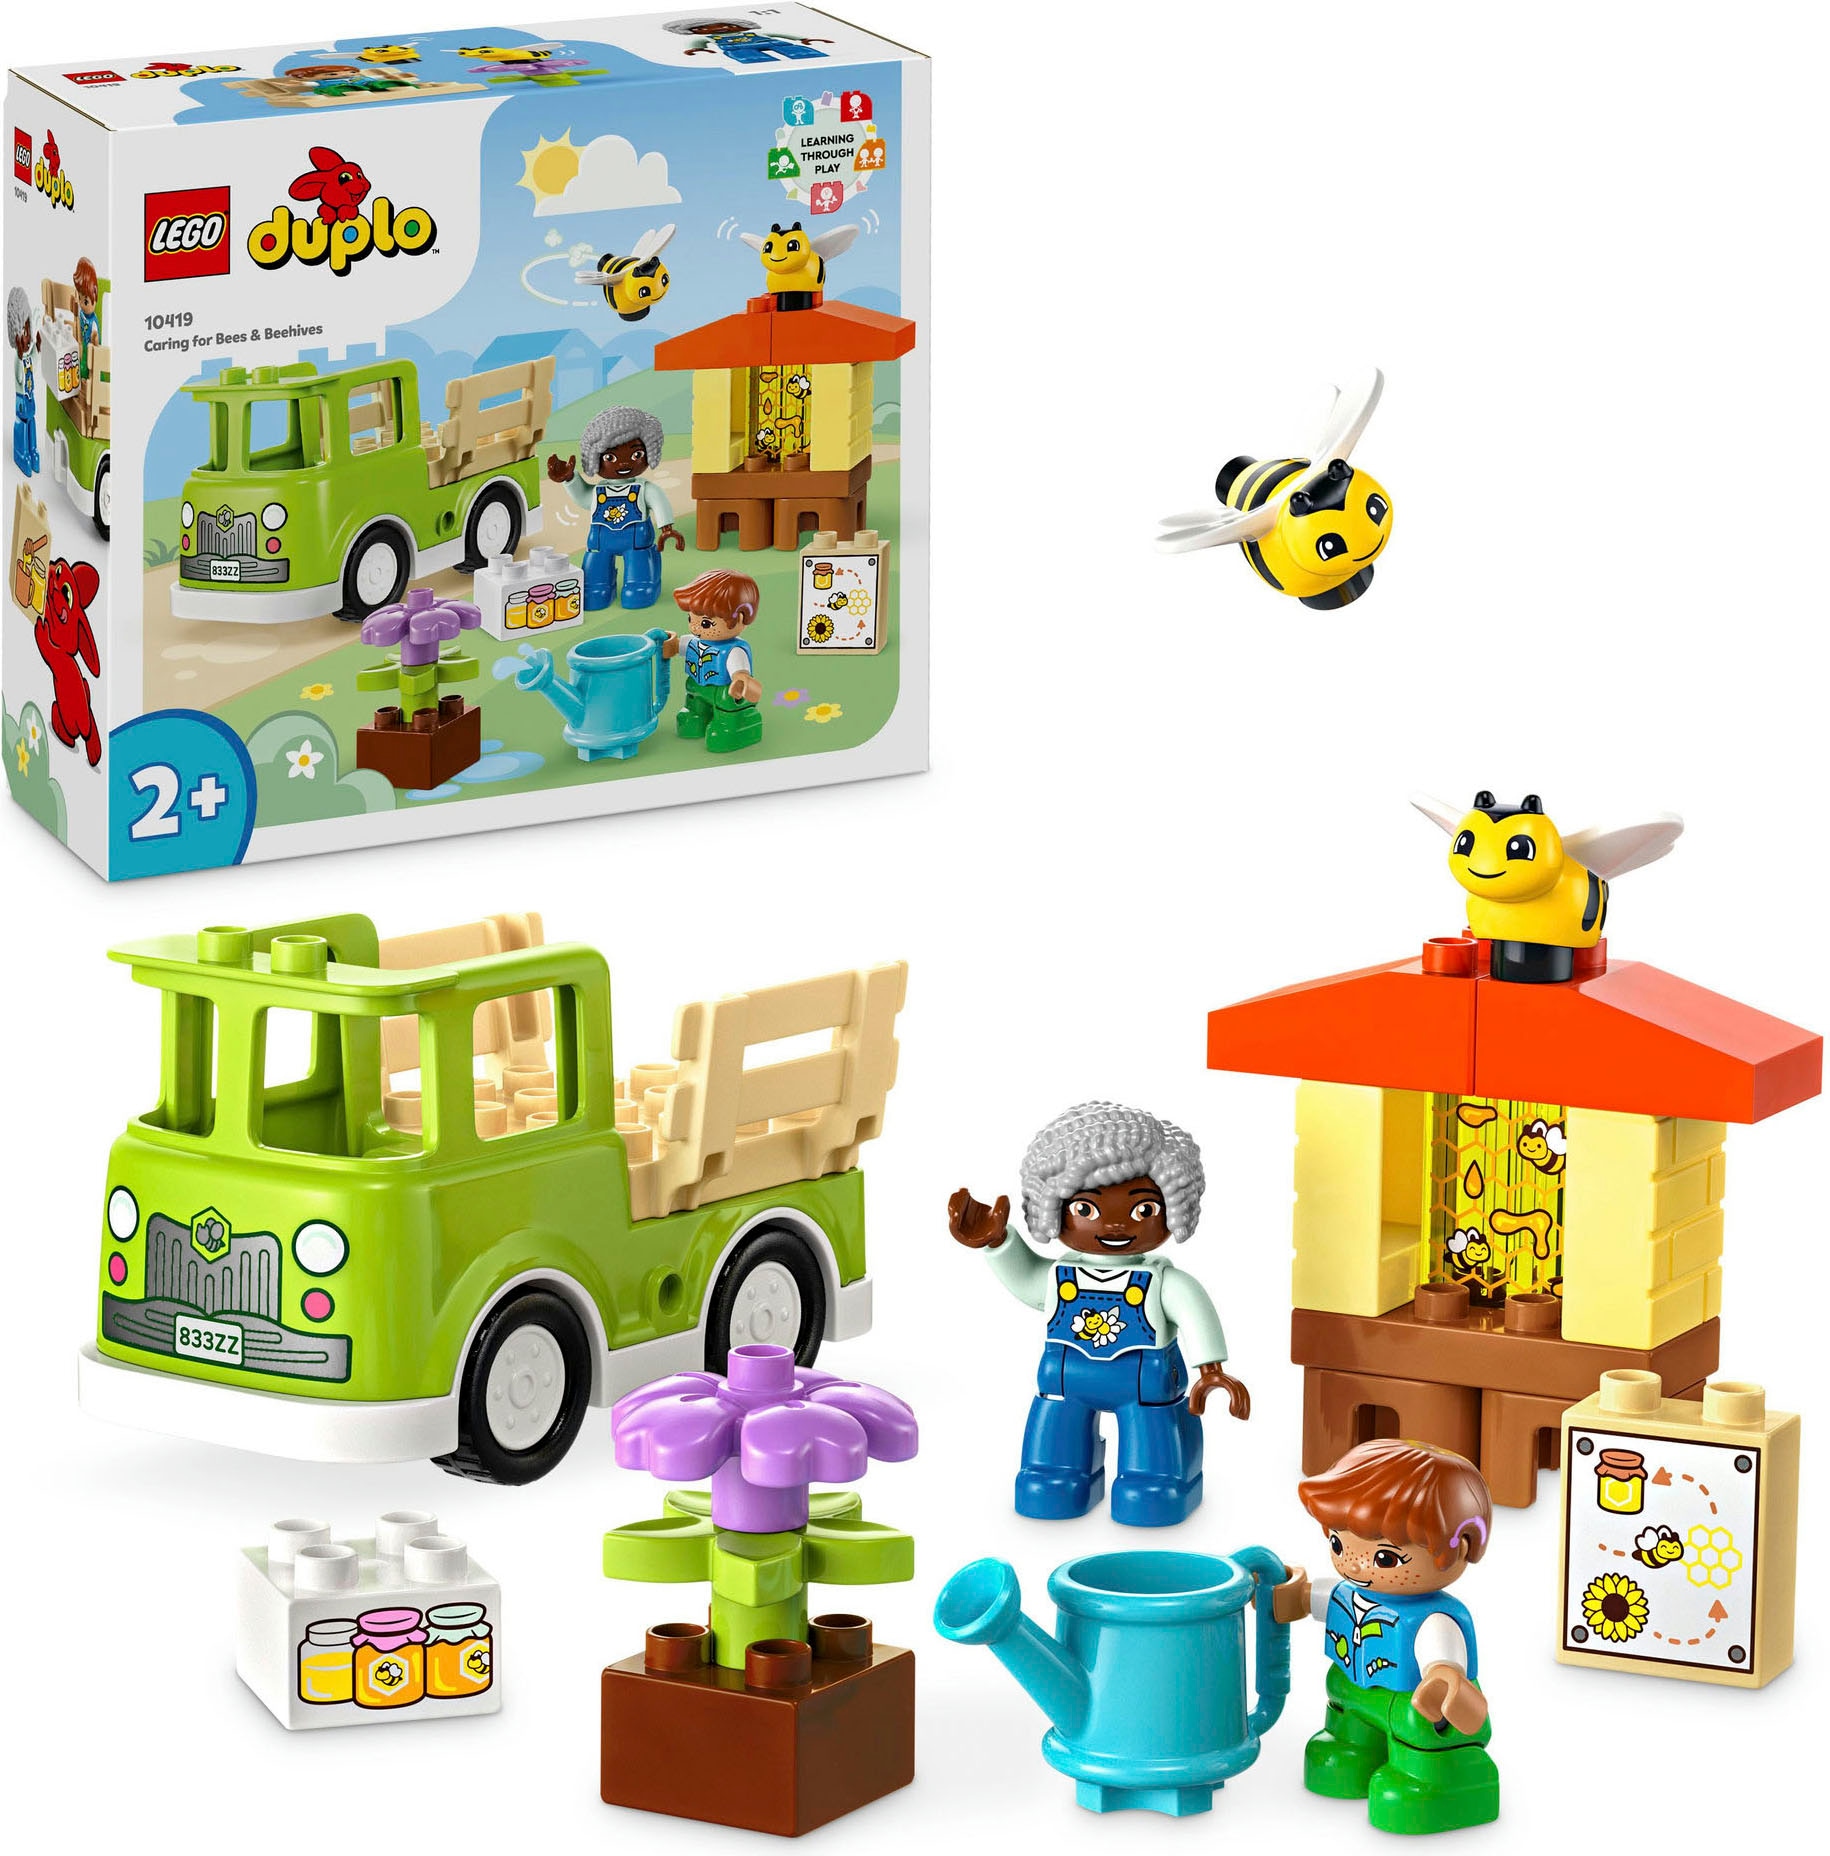 OTTO bestellen DUPLO in LEGO® »Imkerei und bei LEGO Konstruktionsspielsteine (10419), St.), Town«, Bienenstöcke Europe Made (22